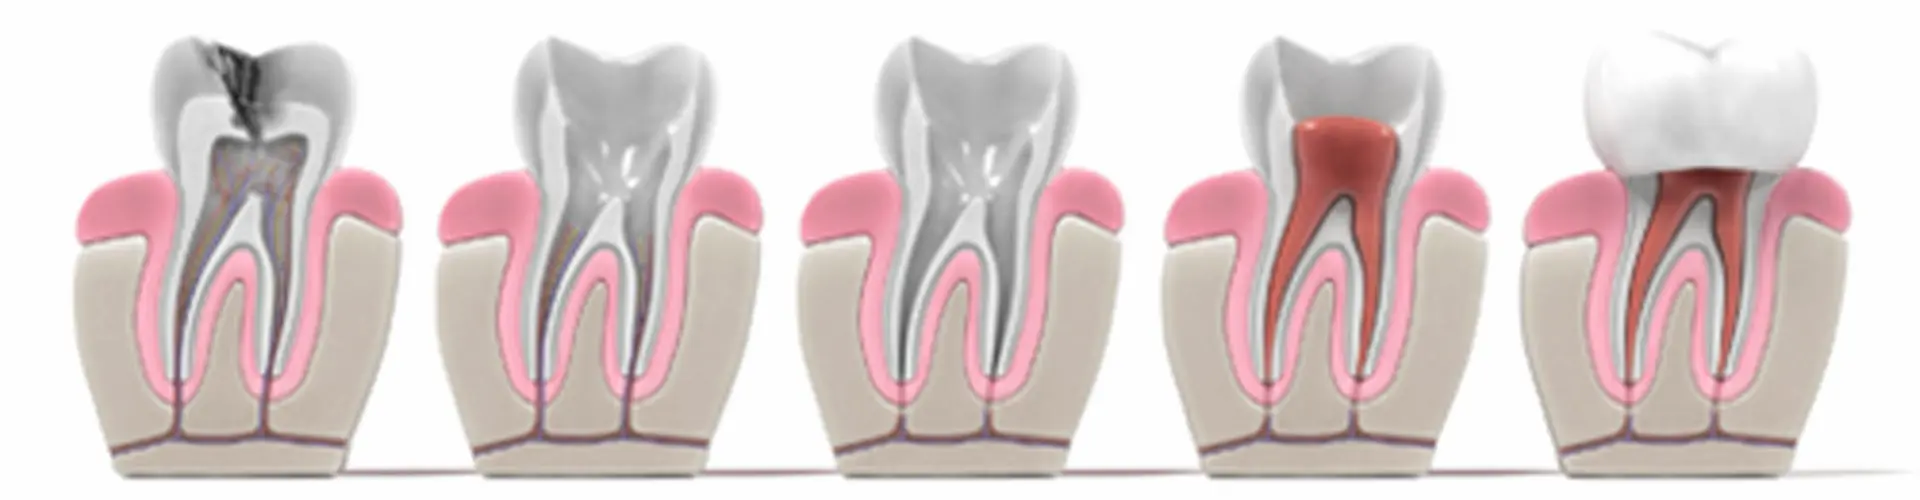 Teeth illustration